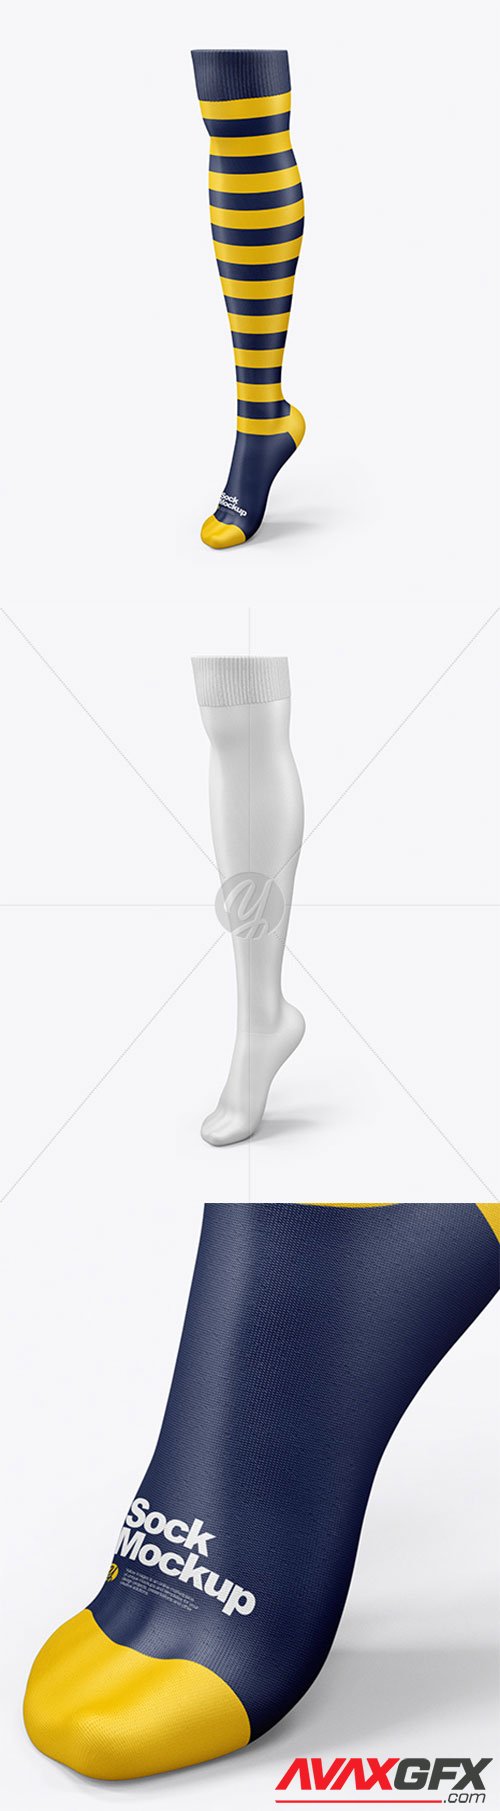 Long Sock Mockup 38939